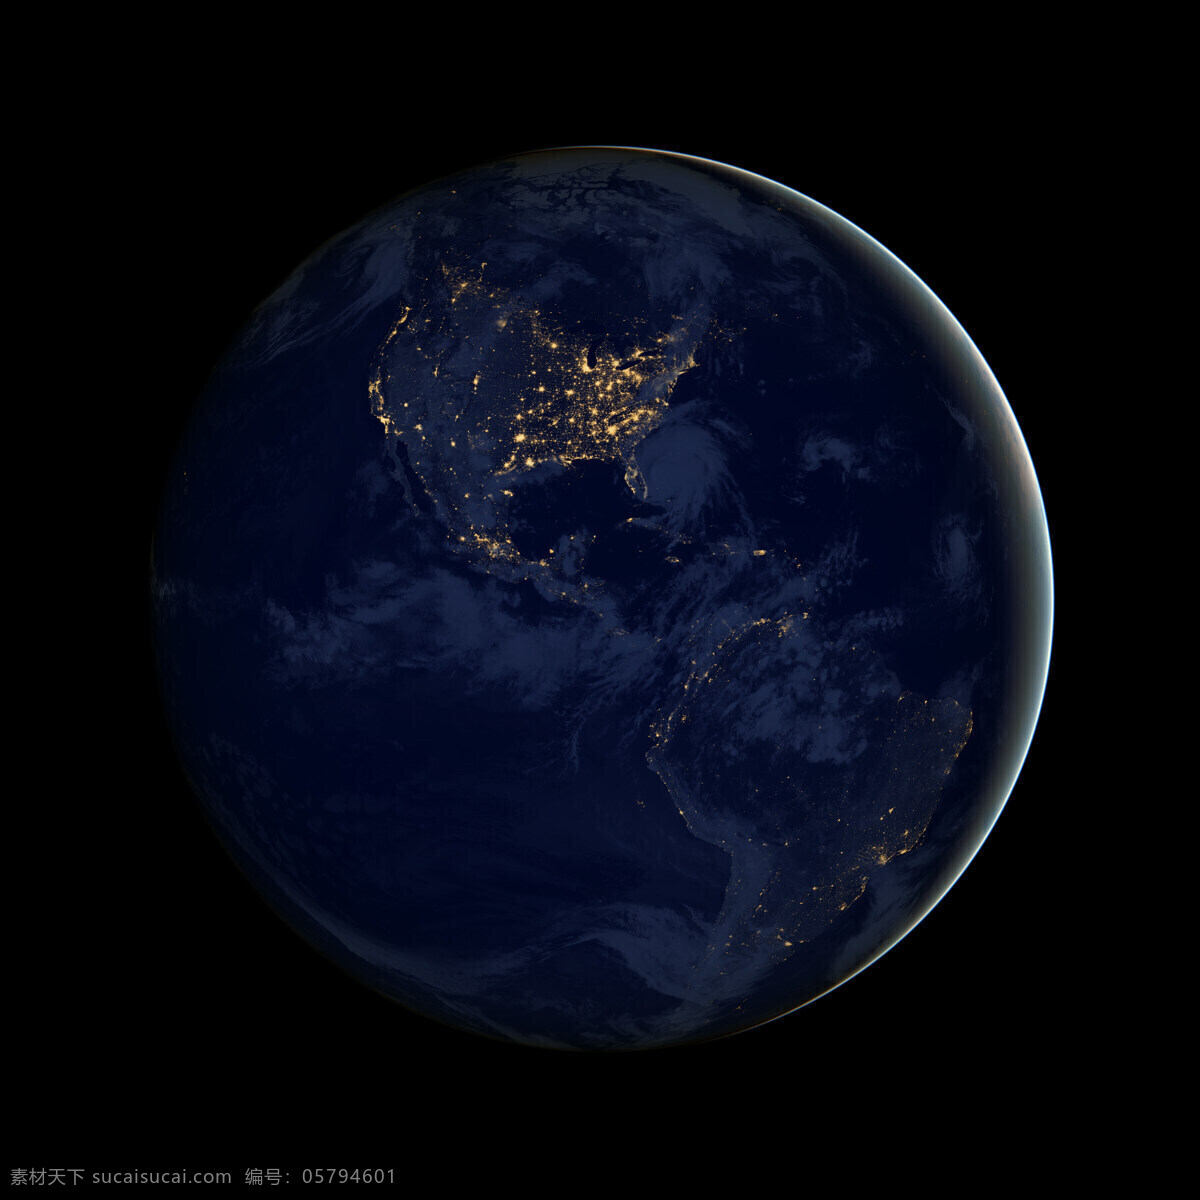 nasa 美国 卫星 夜景 图 地球 灯光图 欧洲 亚洲 西亚 上帝之眼 自然景观 自然风景